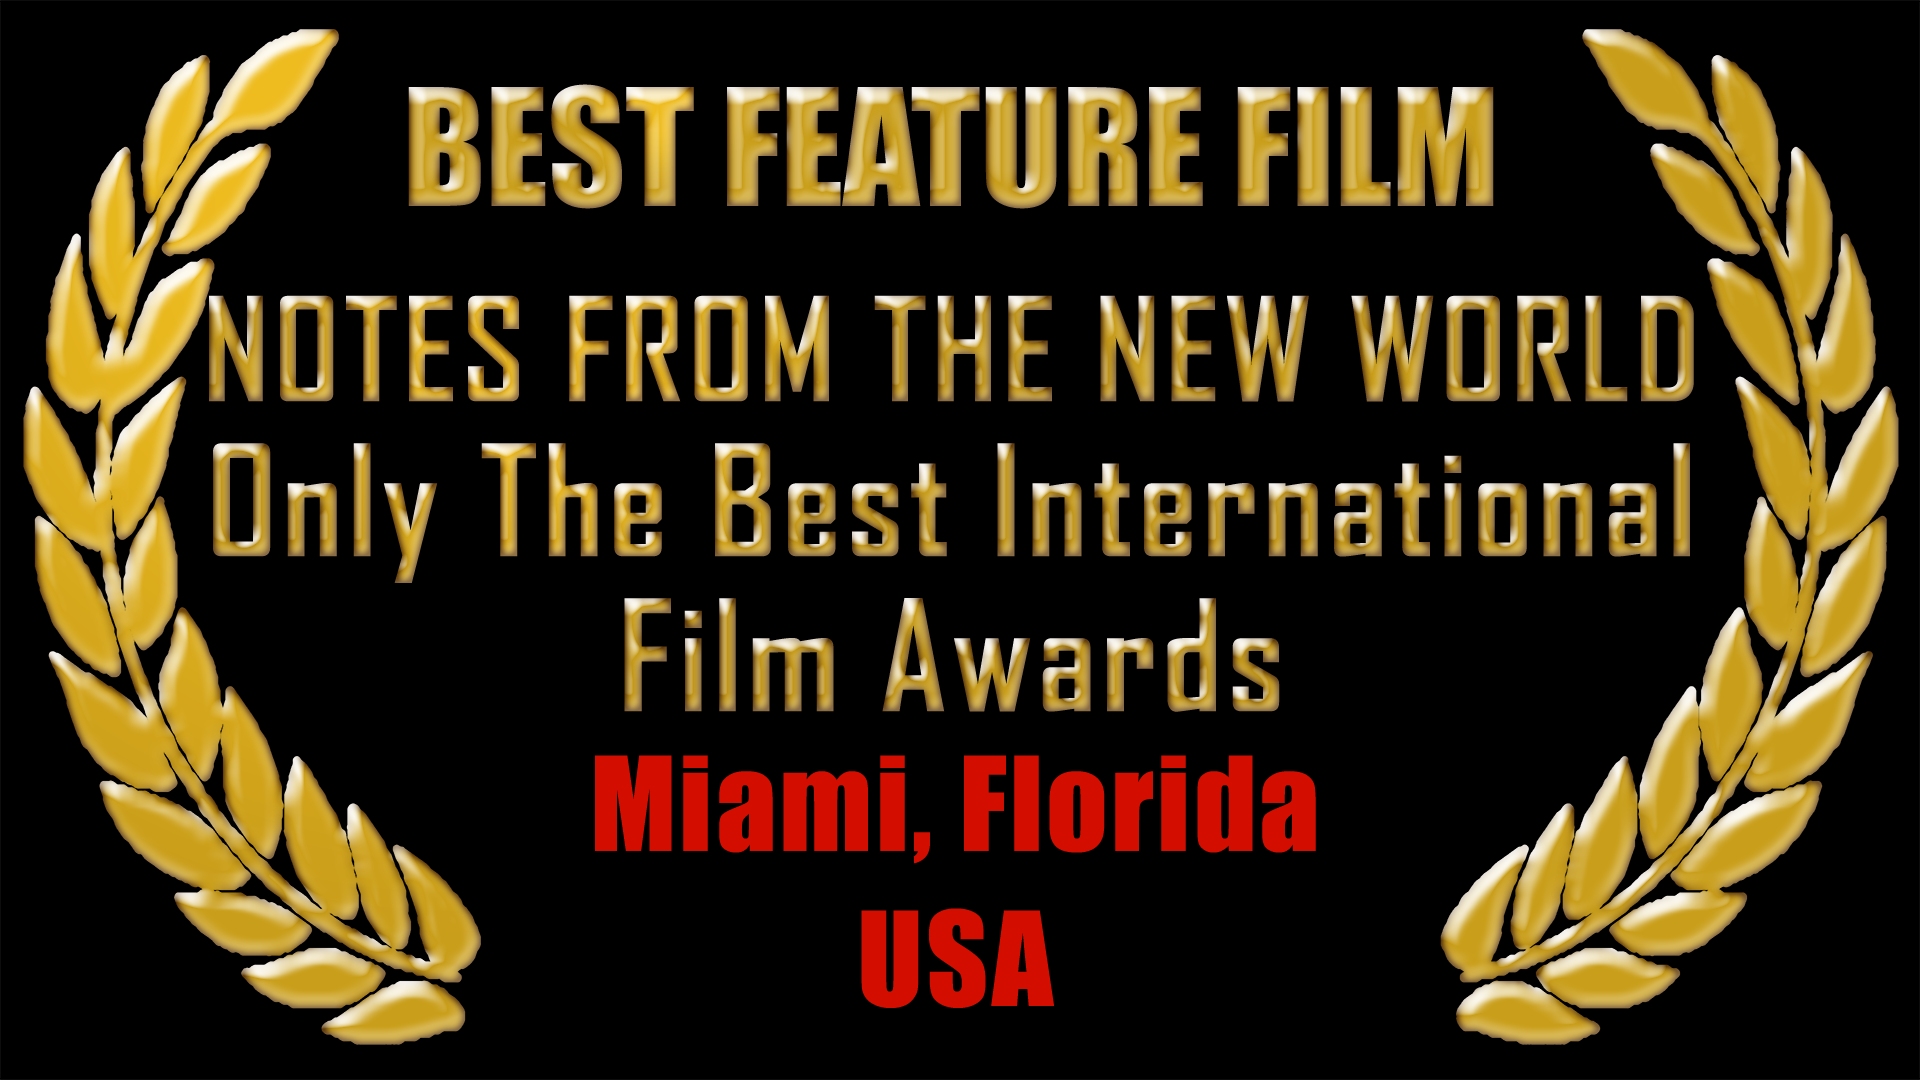 Best Feature Film, Miami, Florida